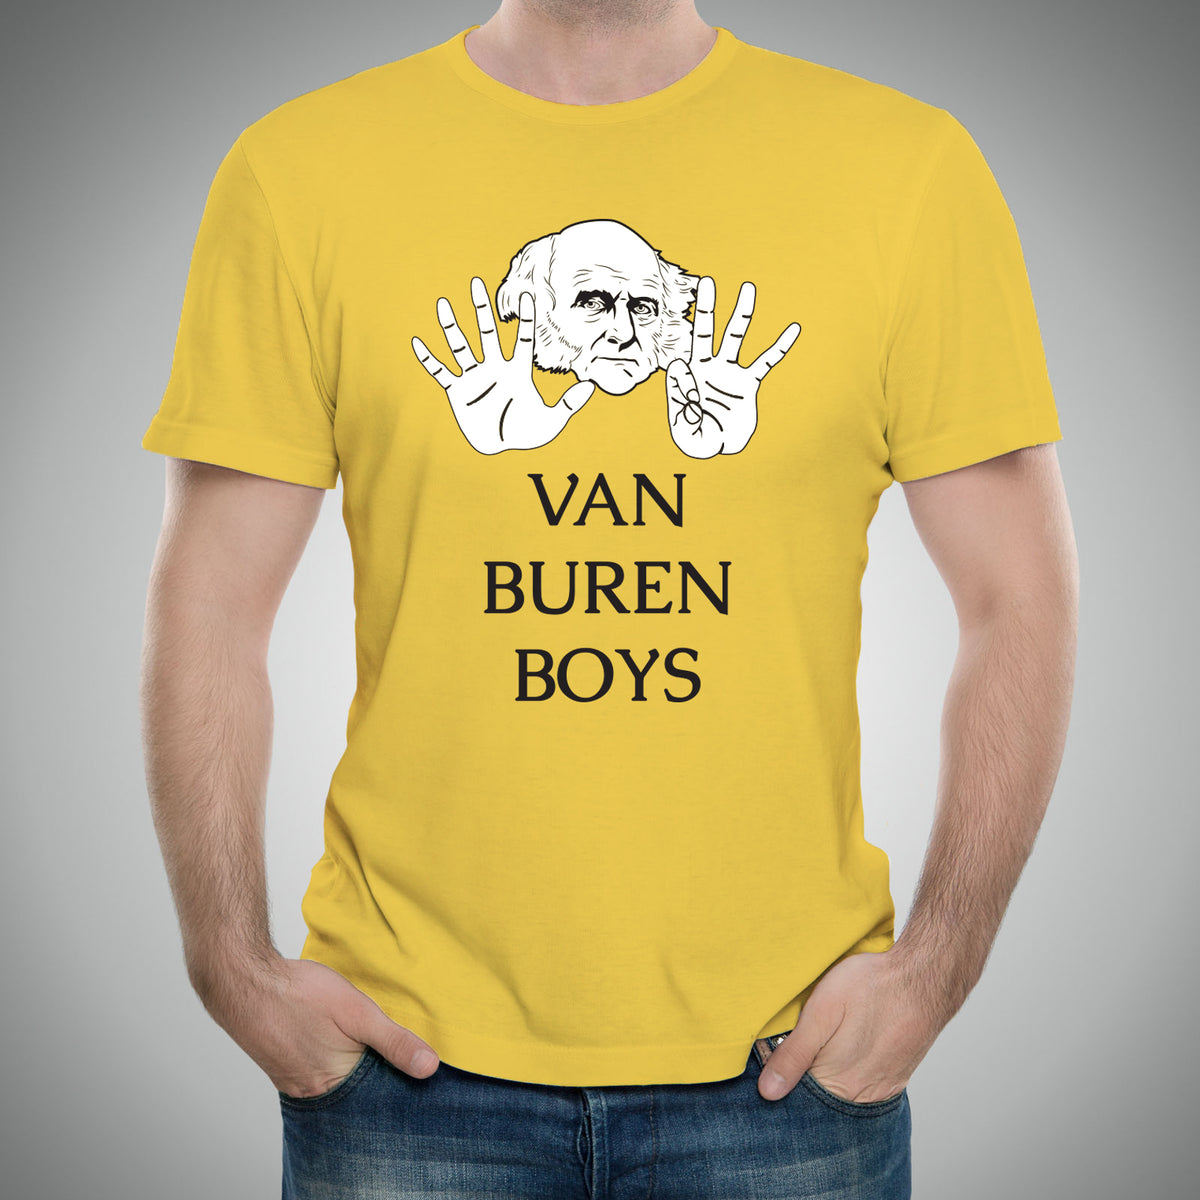 van buren boys t shirt